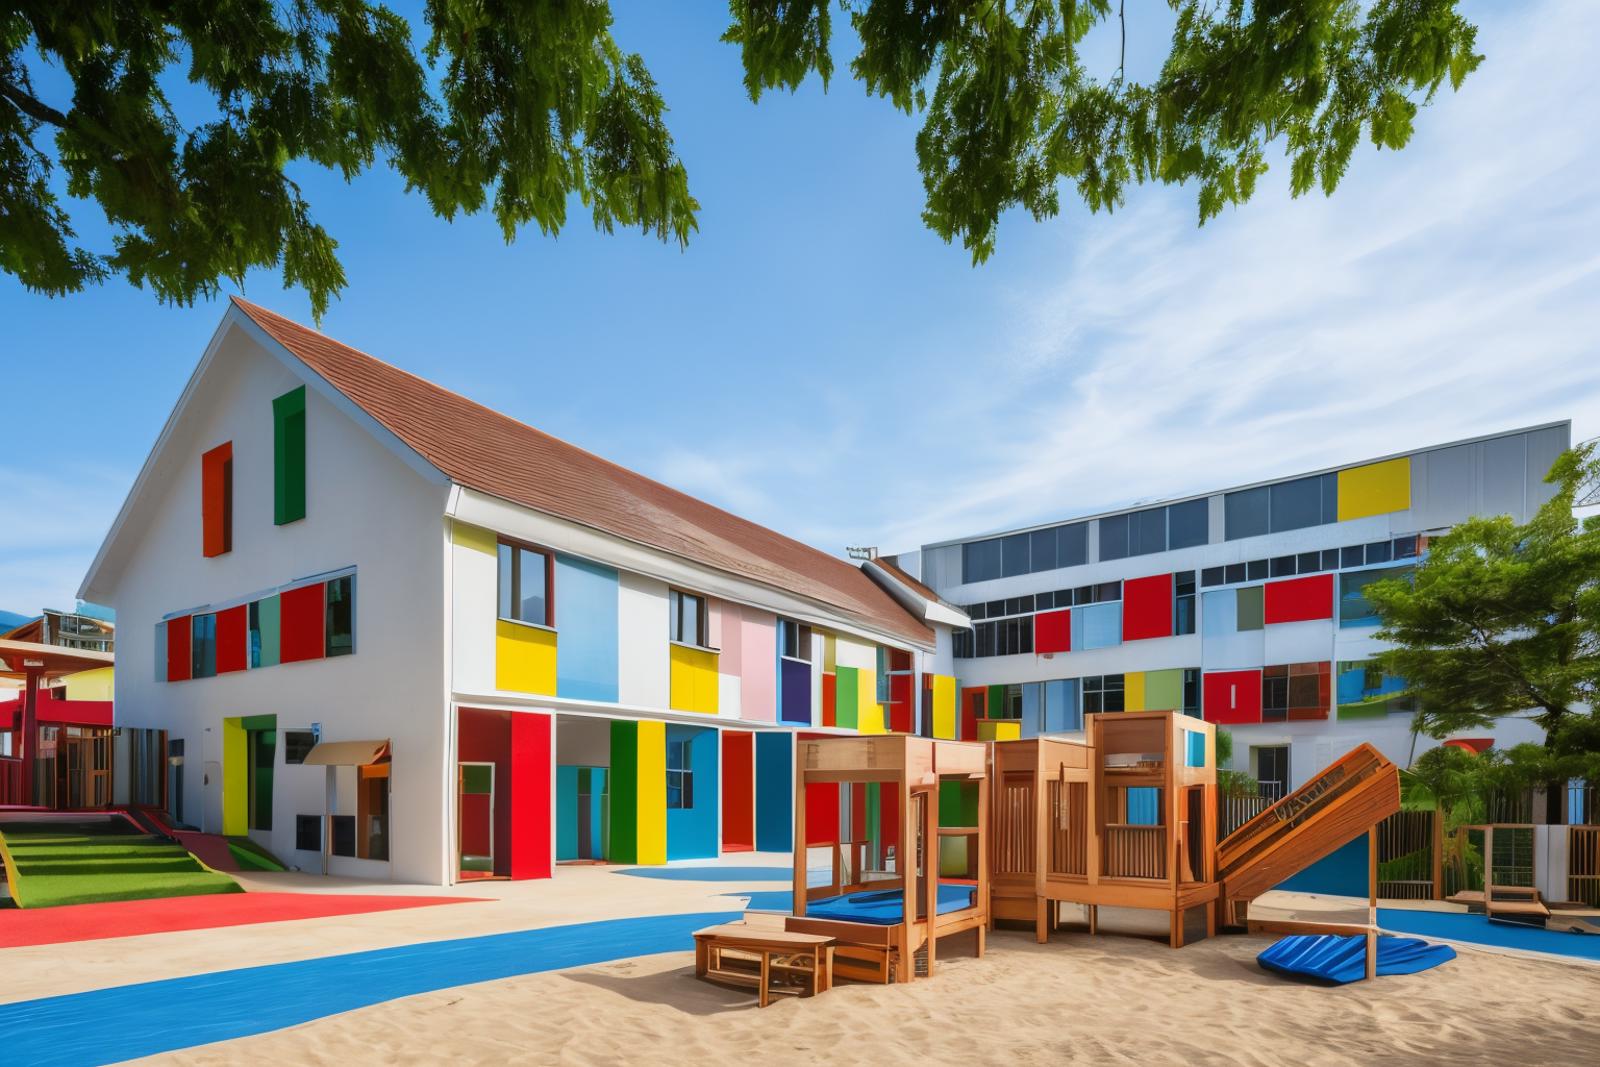 JJ's Architecture - Kindergarten image by jjhuang